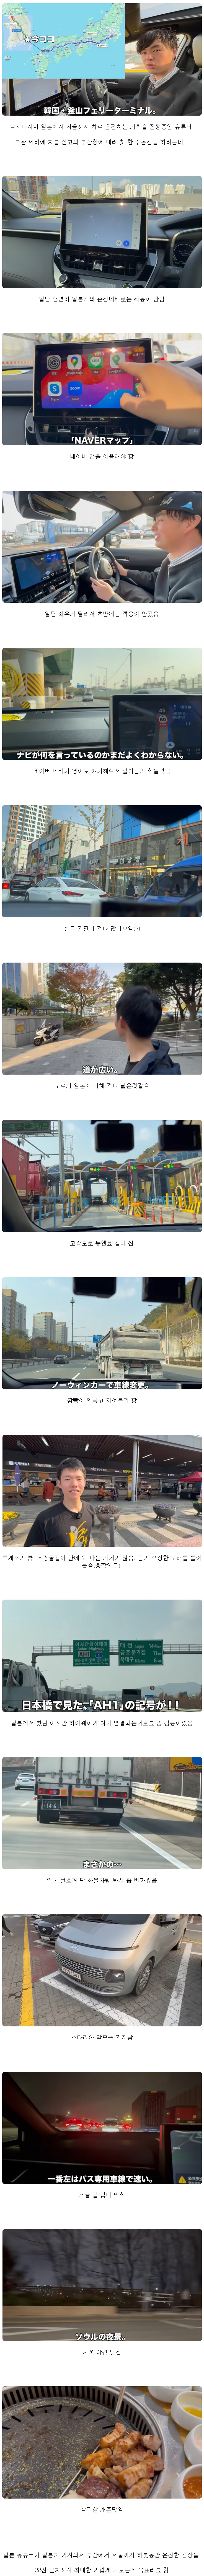 자차 가져와 한국에서 운전해본 일본인